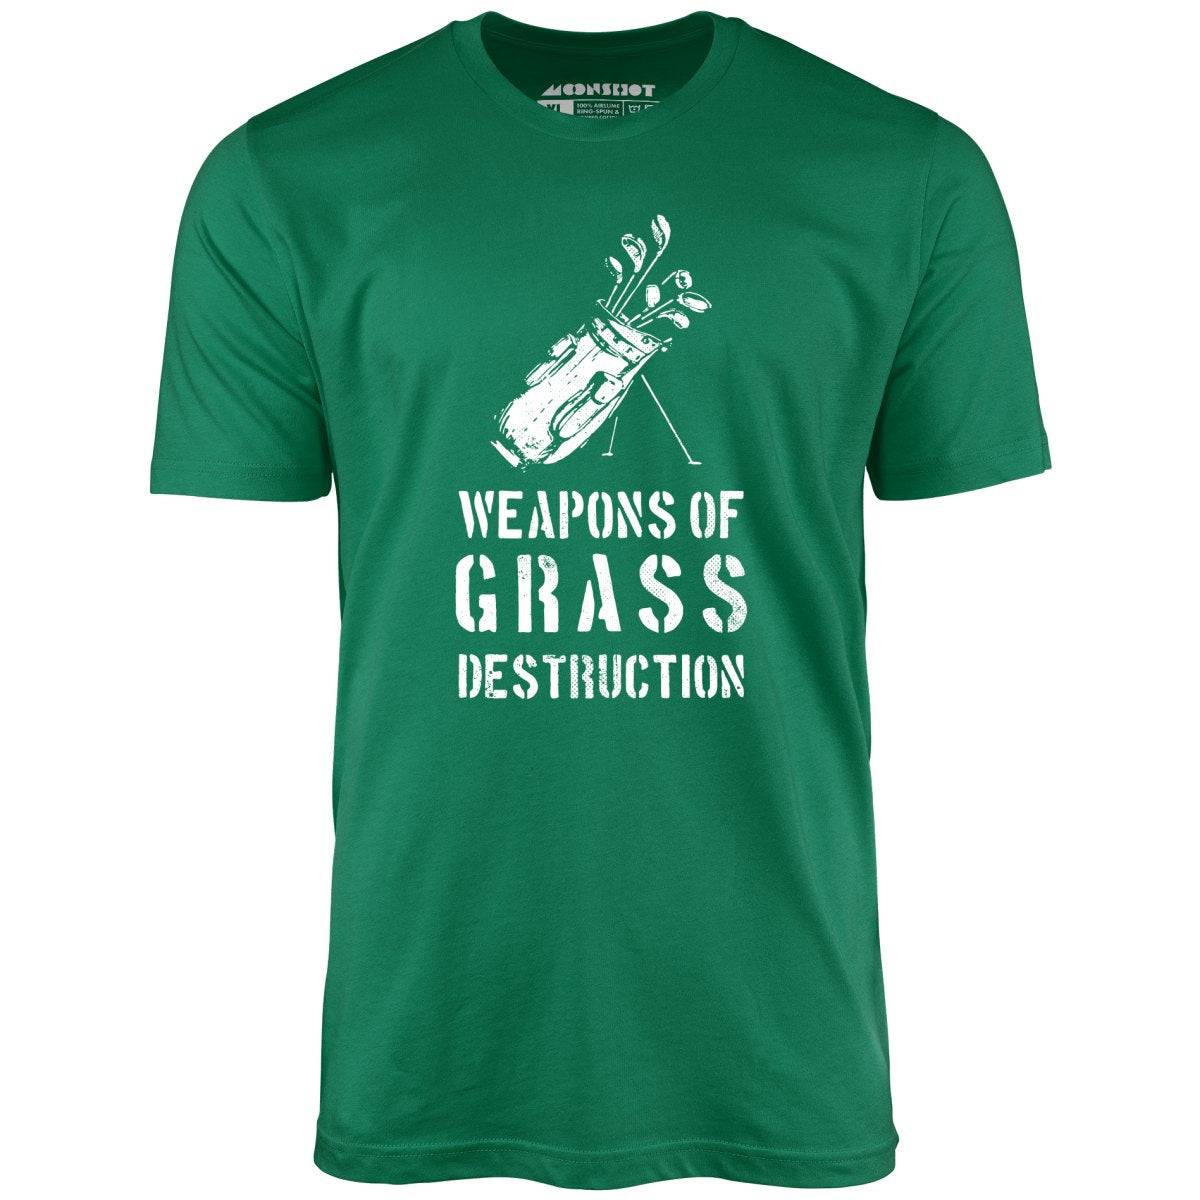 Weapons of Grass Destruction - Unisex T-Shirt